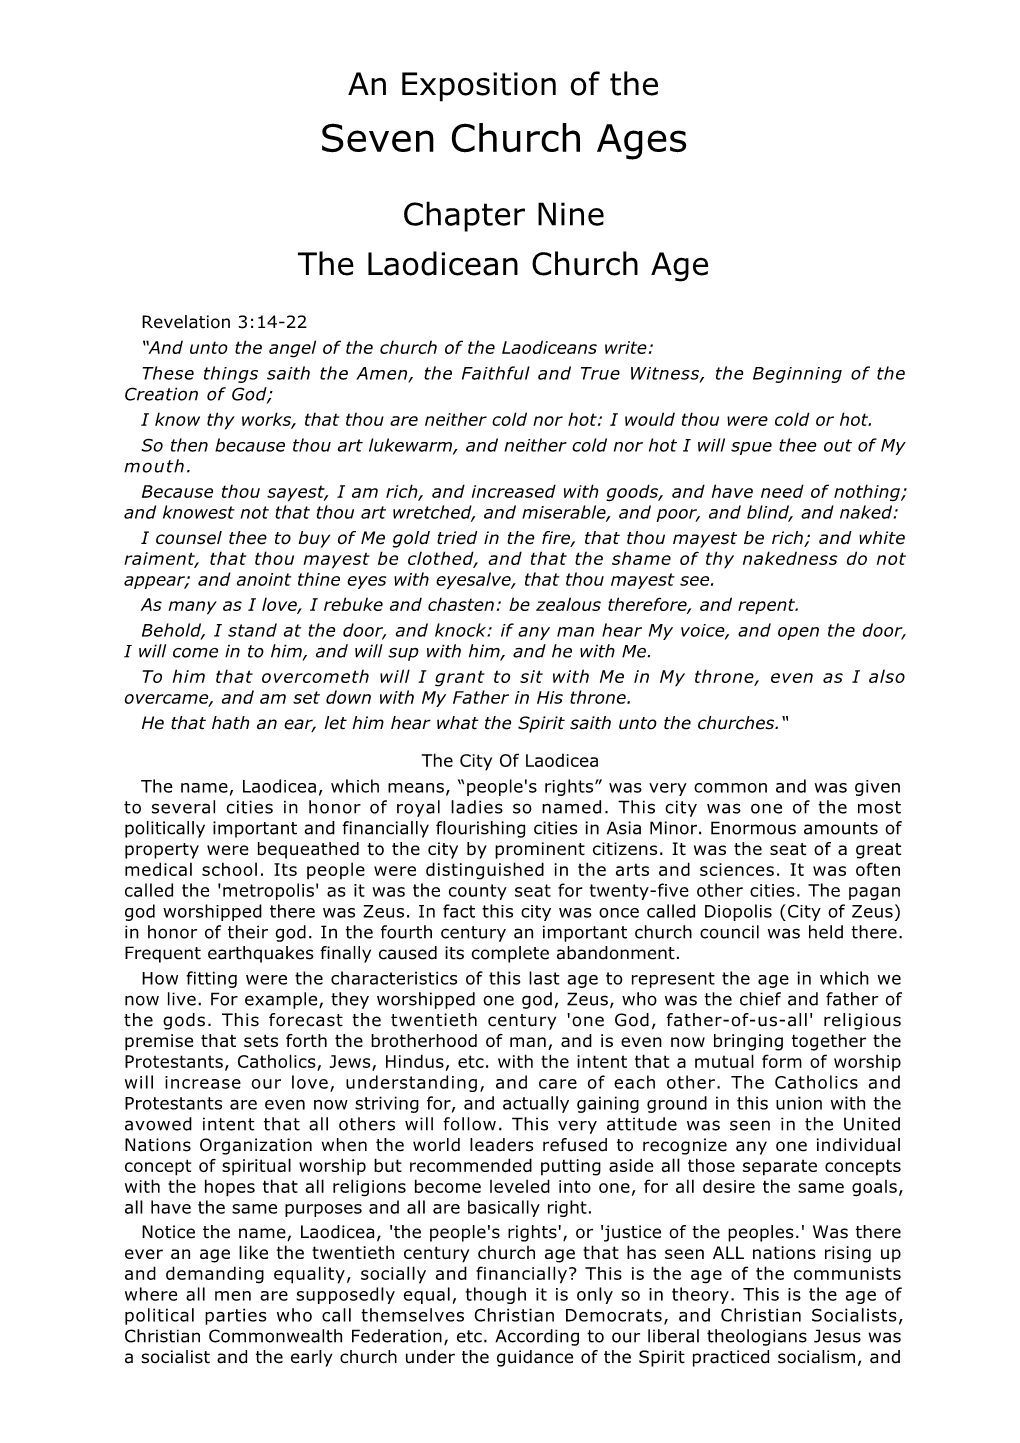 The Laodicean Church Age